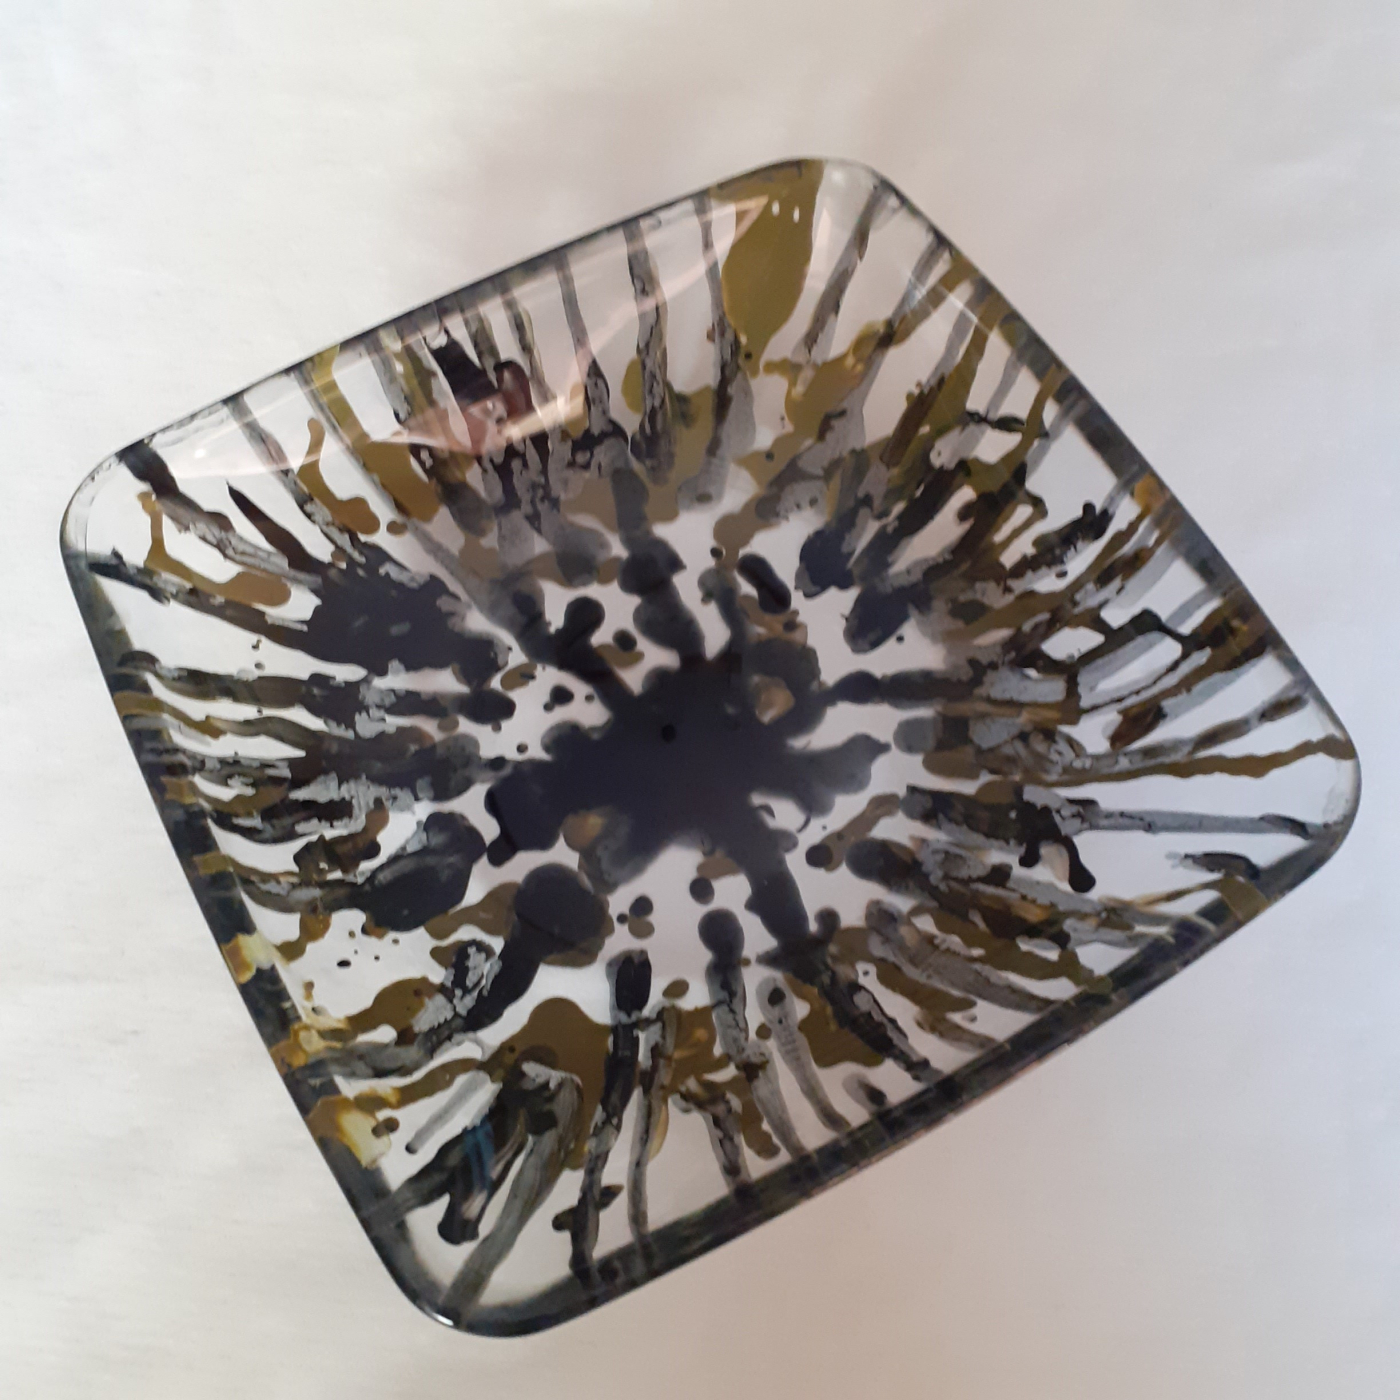 Safata quadrada, en vidre de 19,50 x 19,50 cm (duplicate)